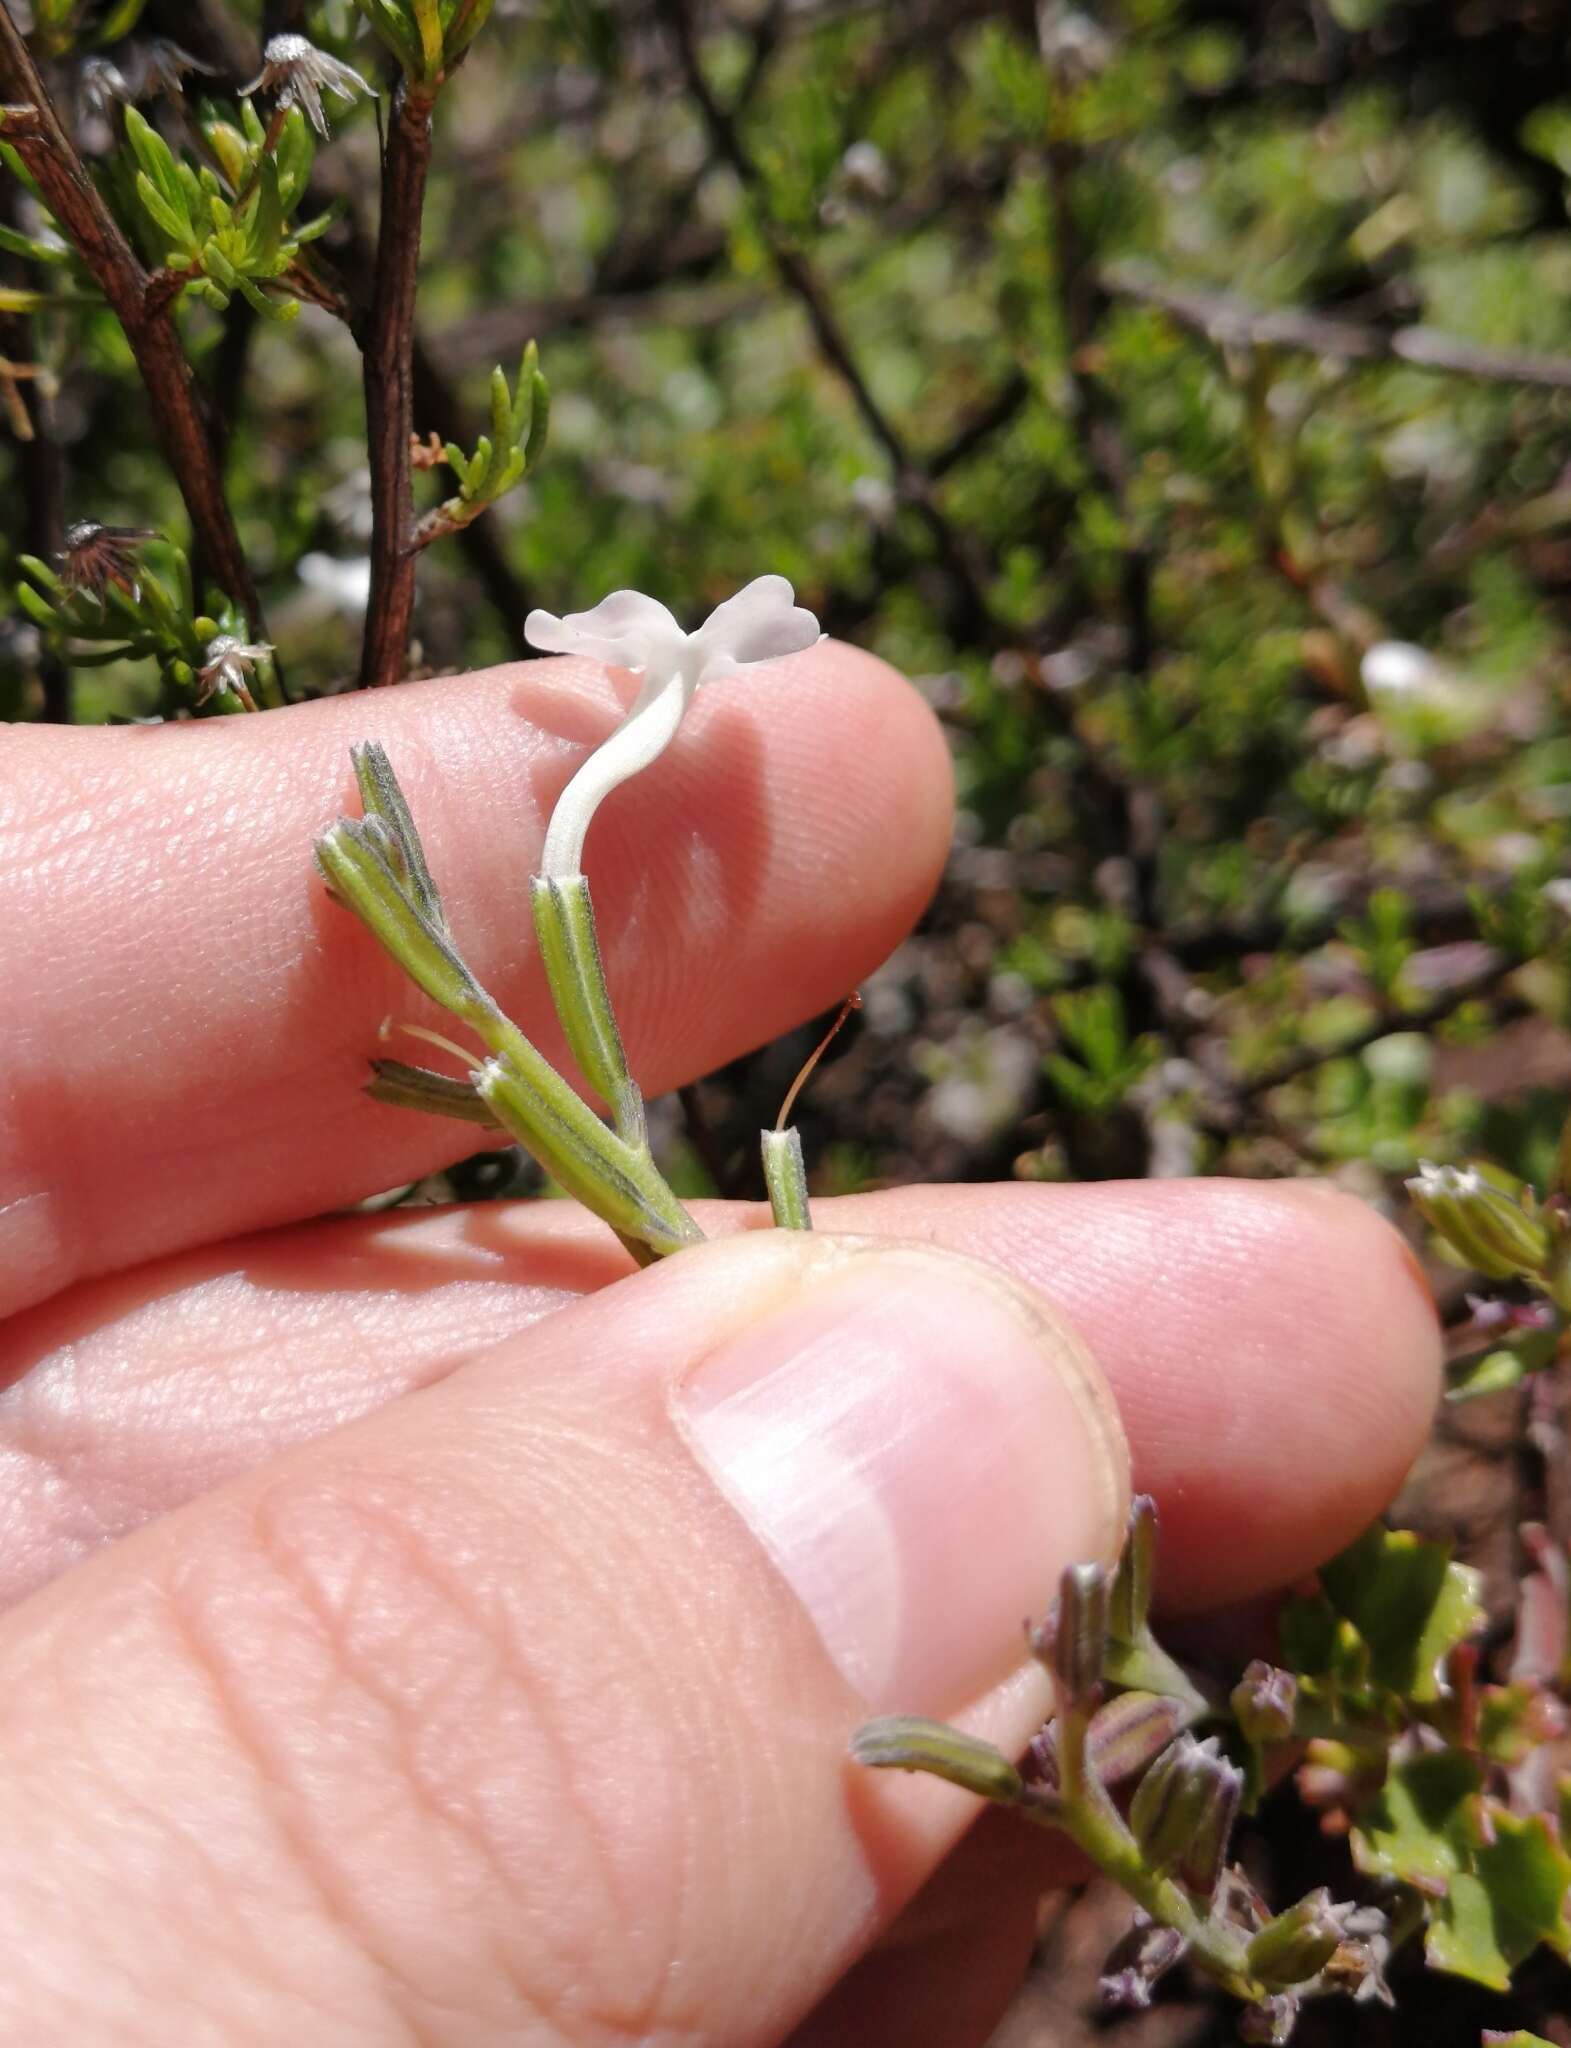 Image of Chascanum cuneifolium (L. fil.) E. Mey.